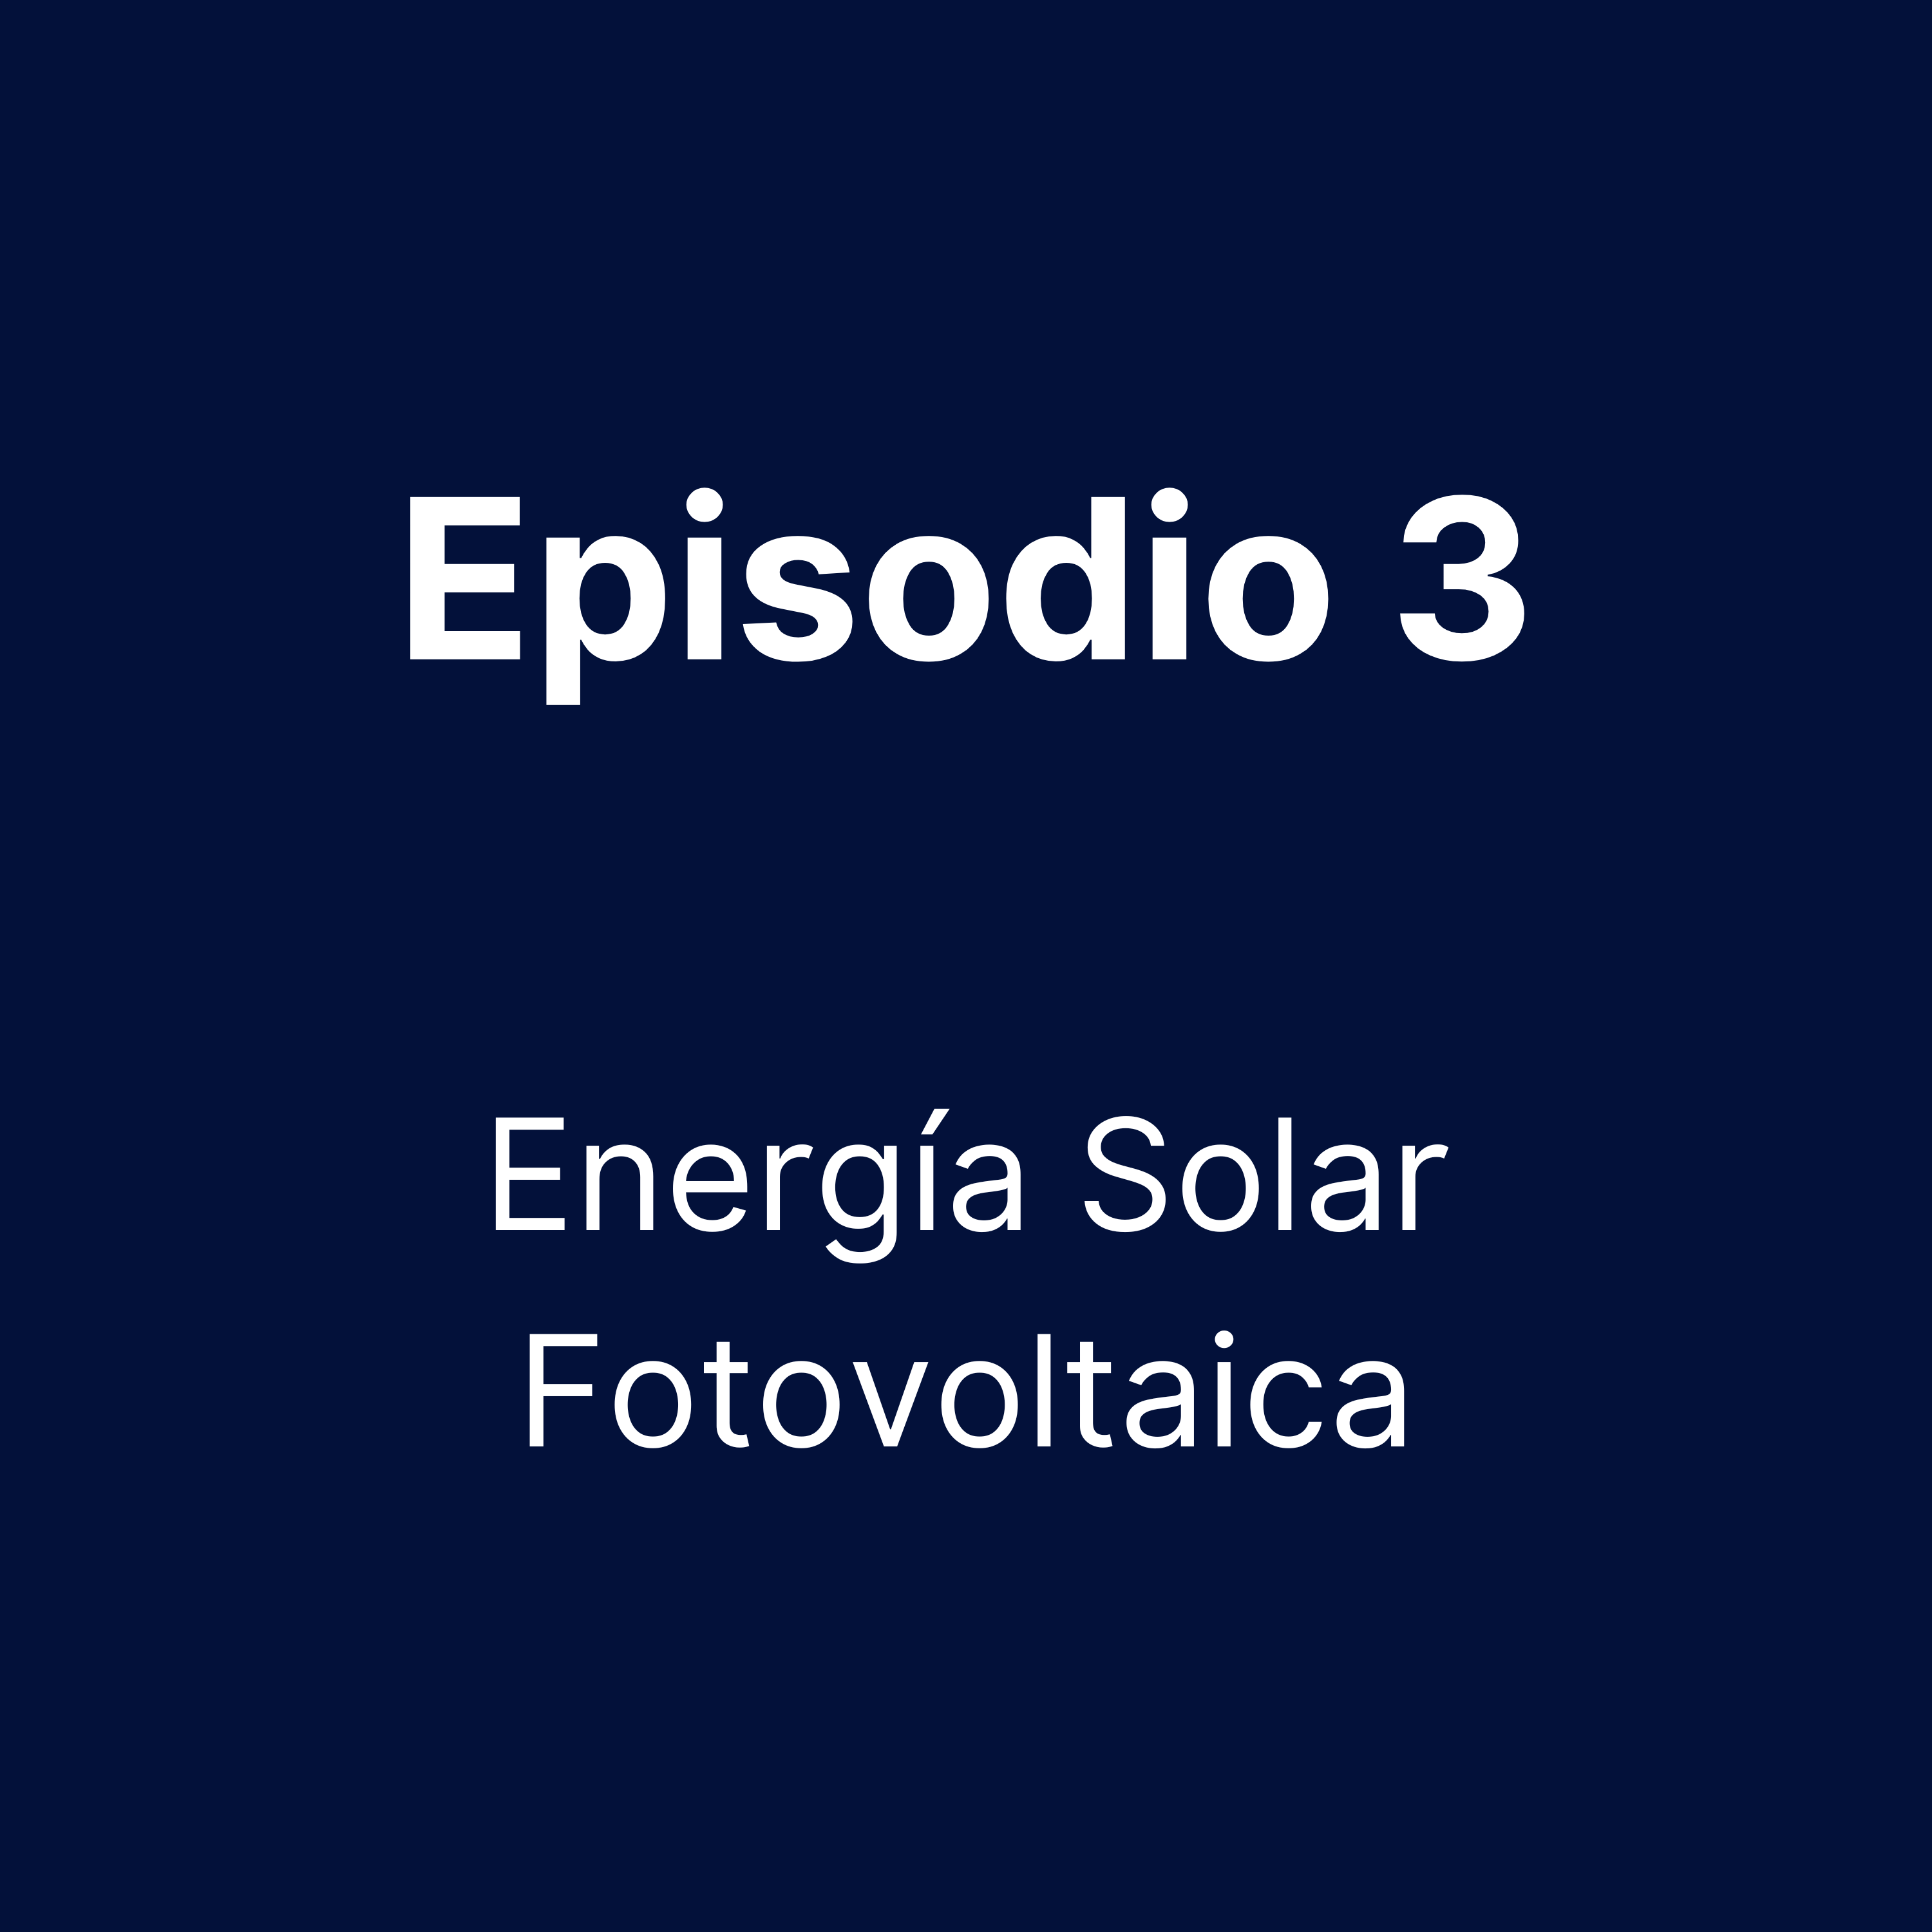 Episodio 3 - Energía Solar Fotovoltaica